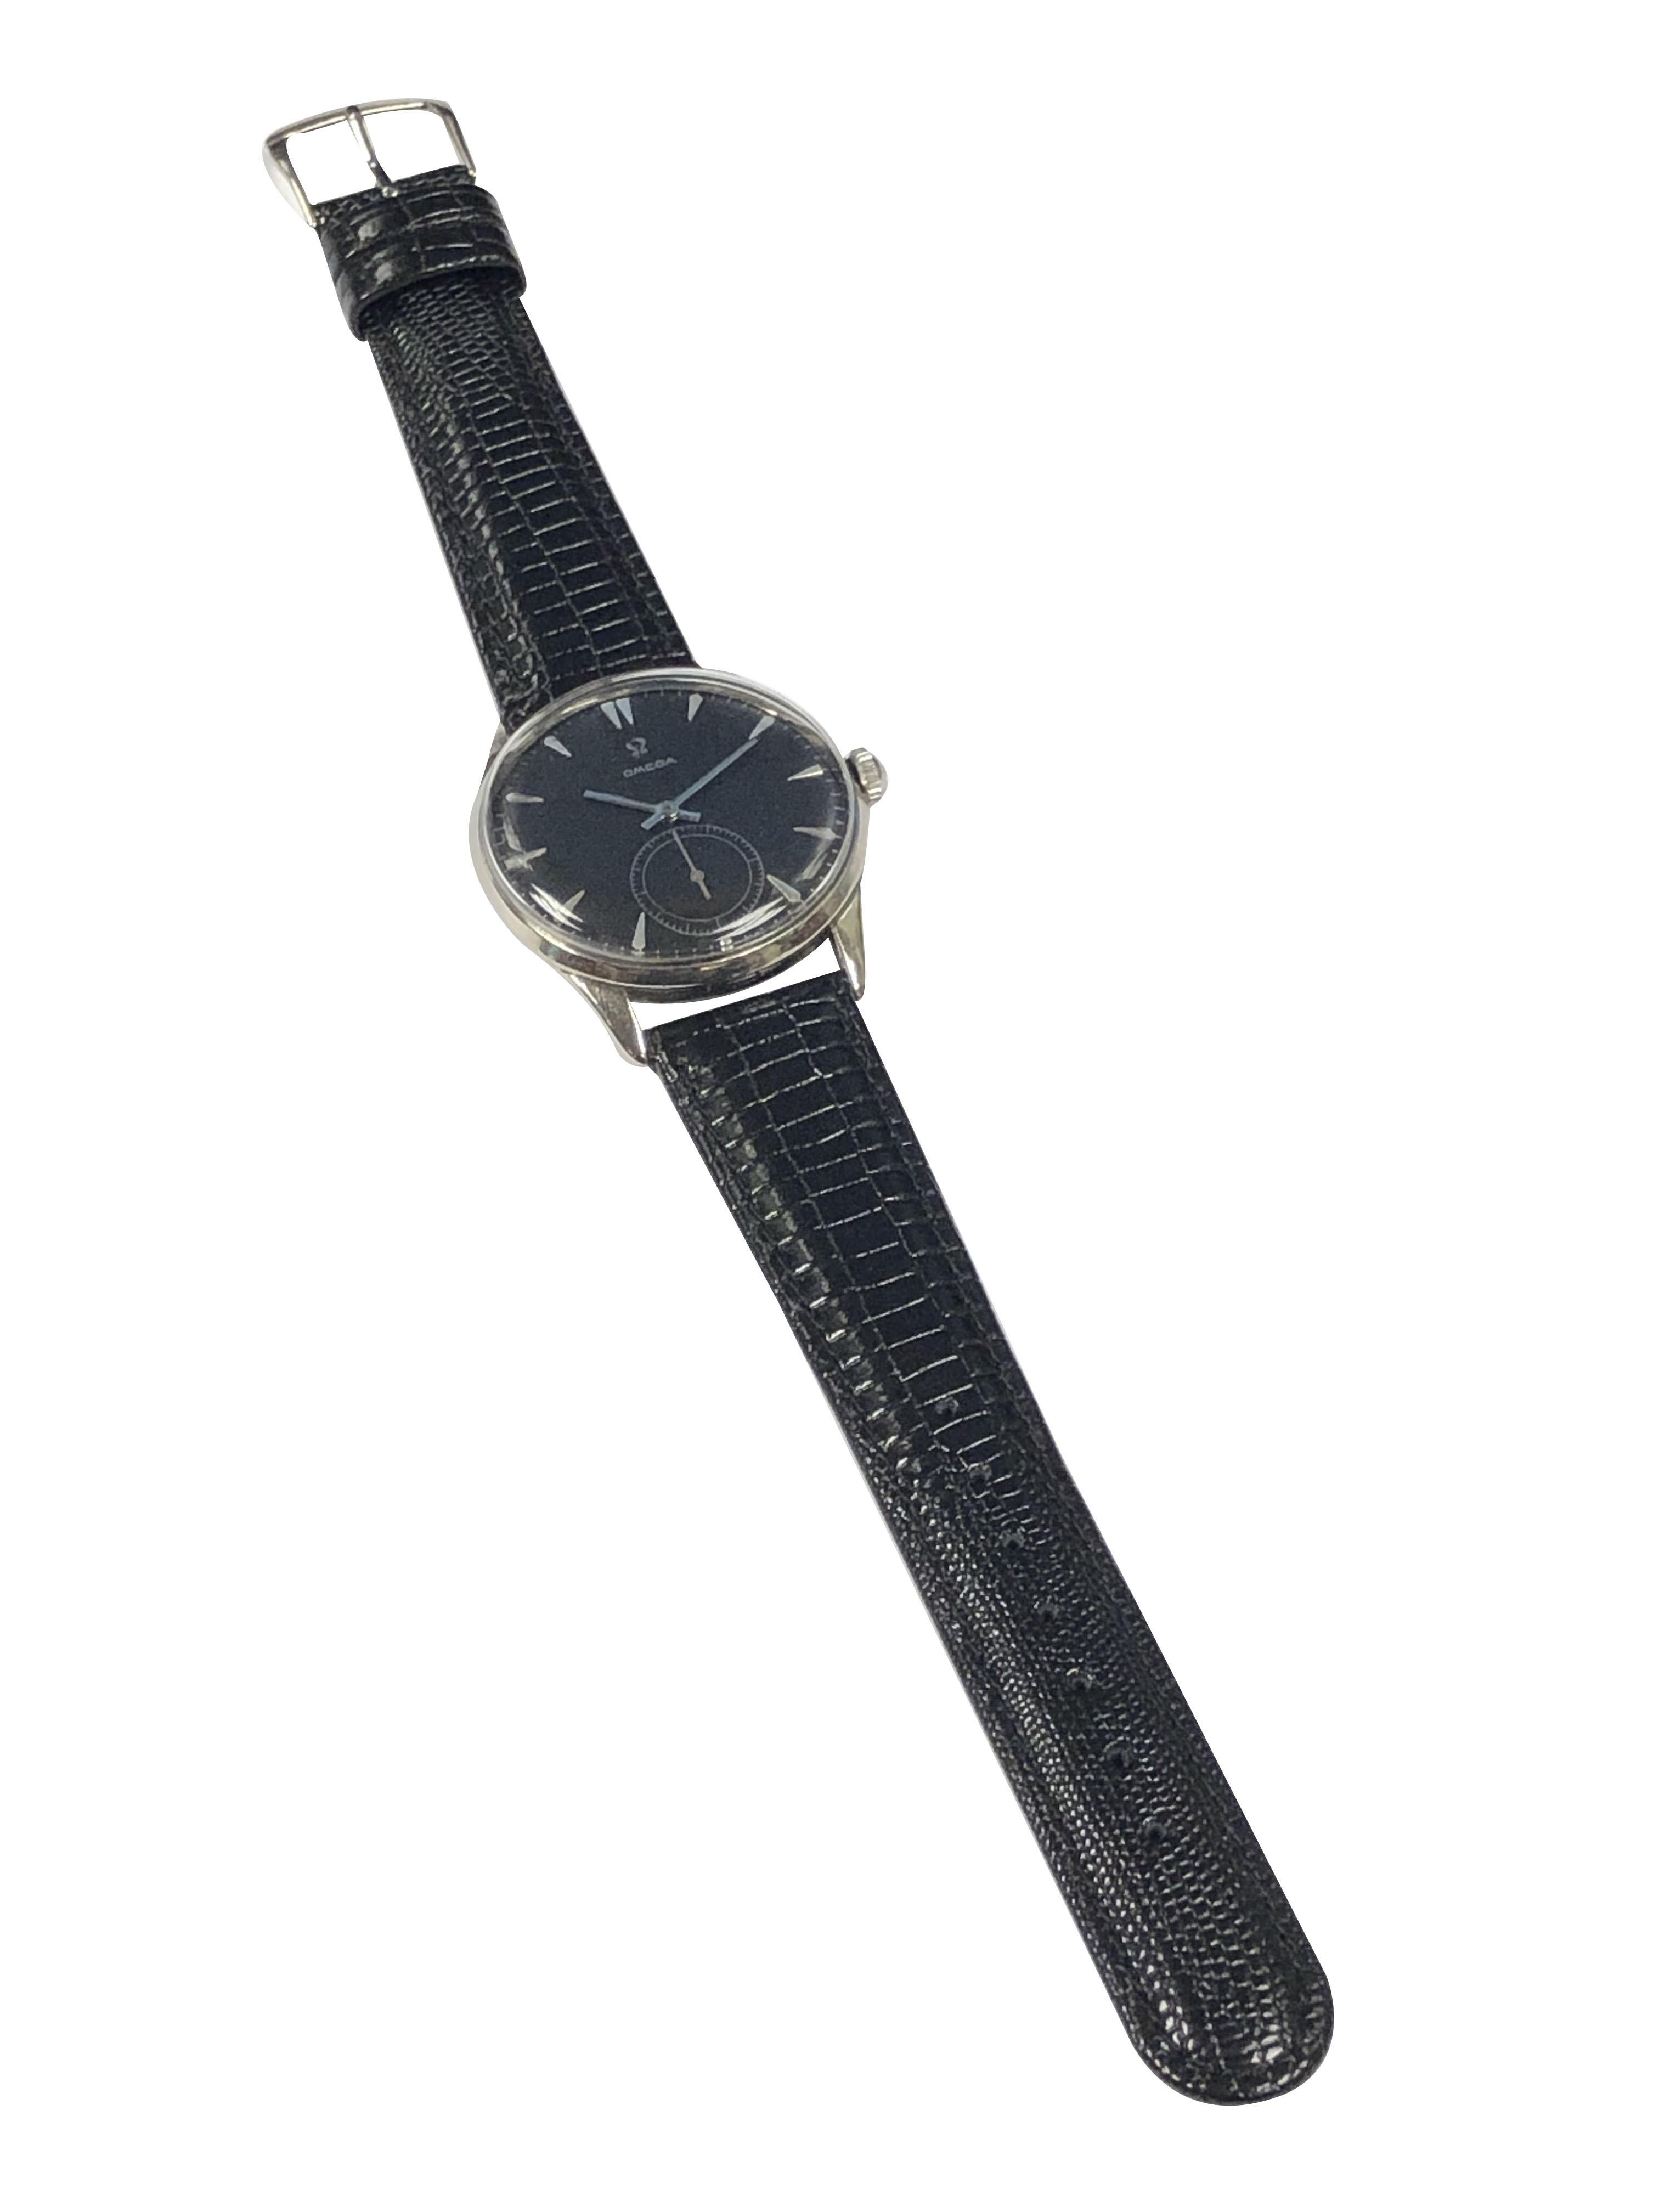 Women's or Men's Omega 1950 Oversize Steel Manual Wind Wristwatch